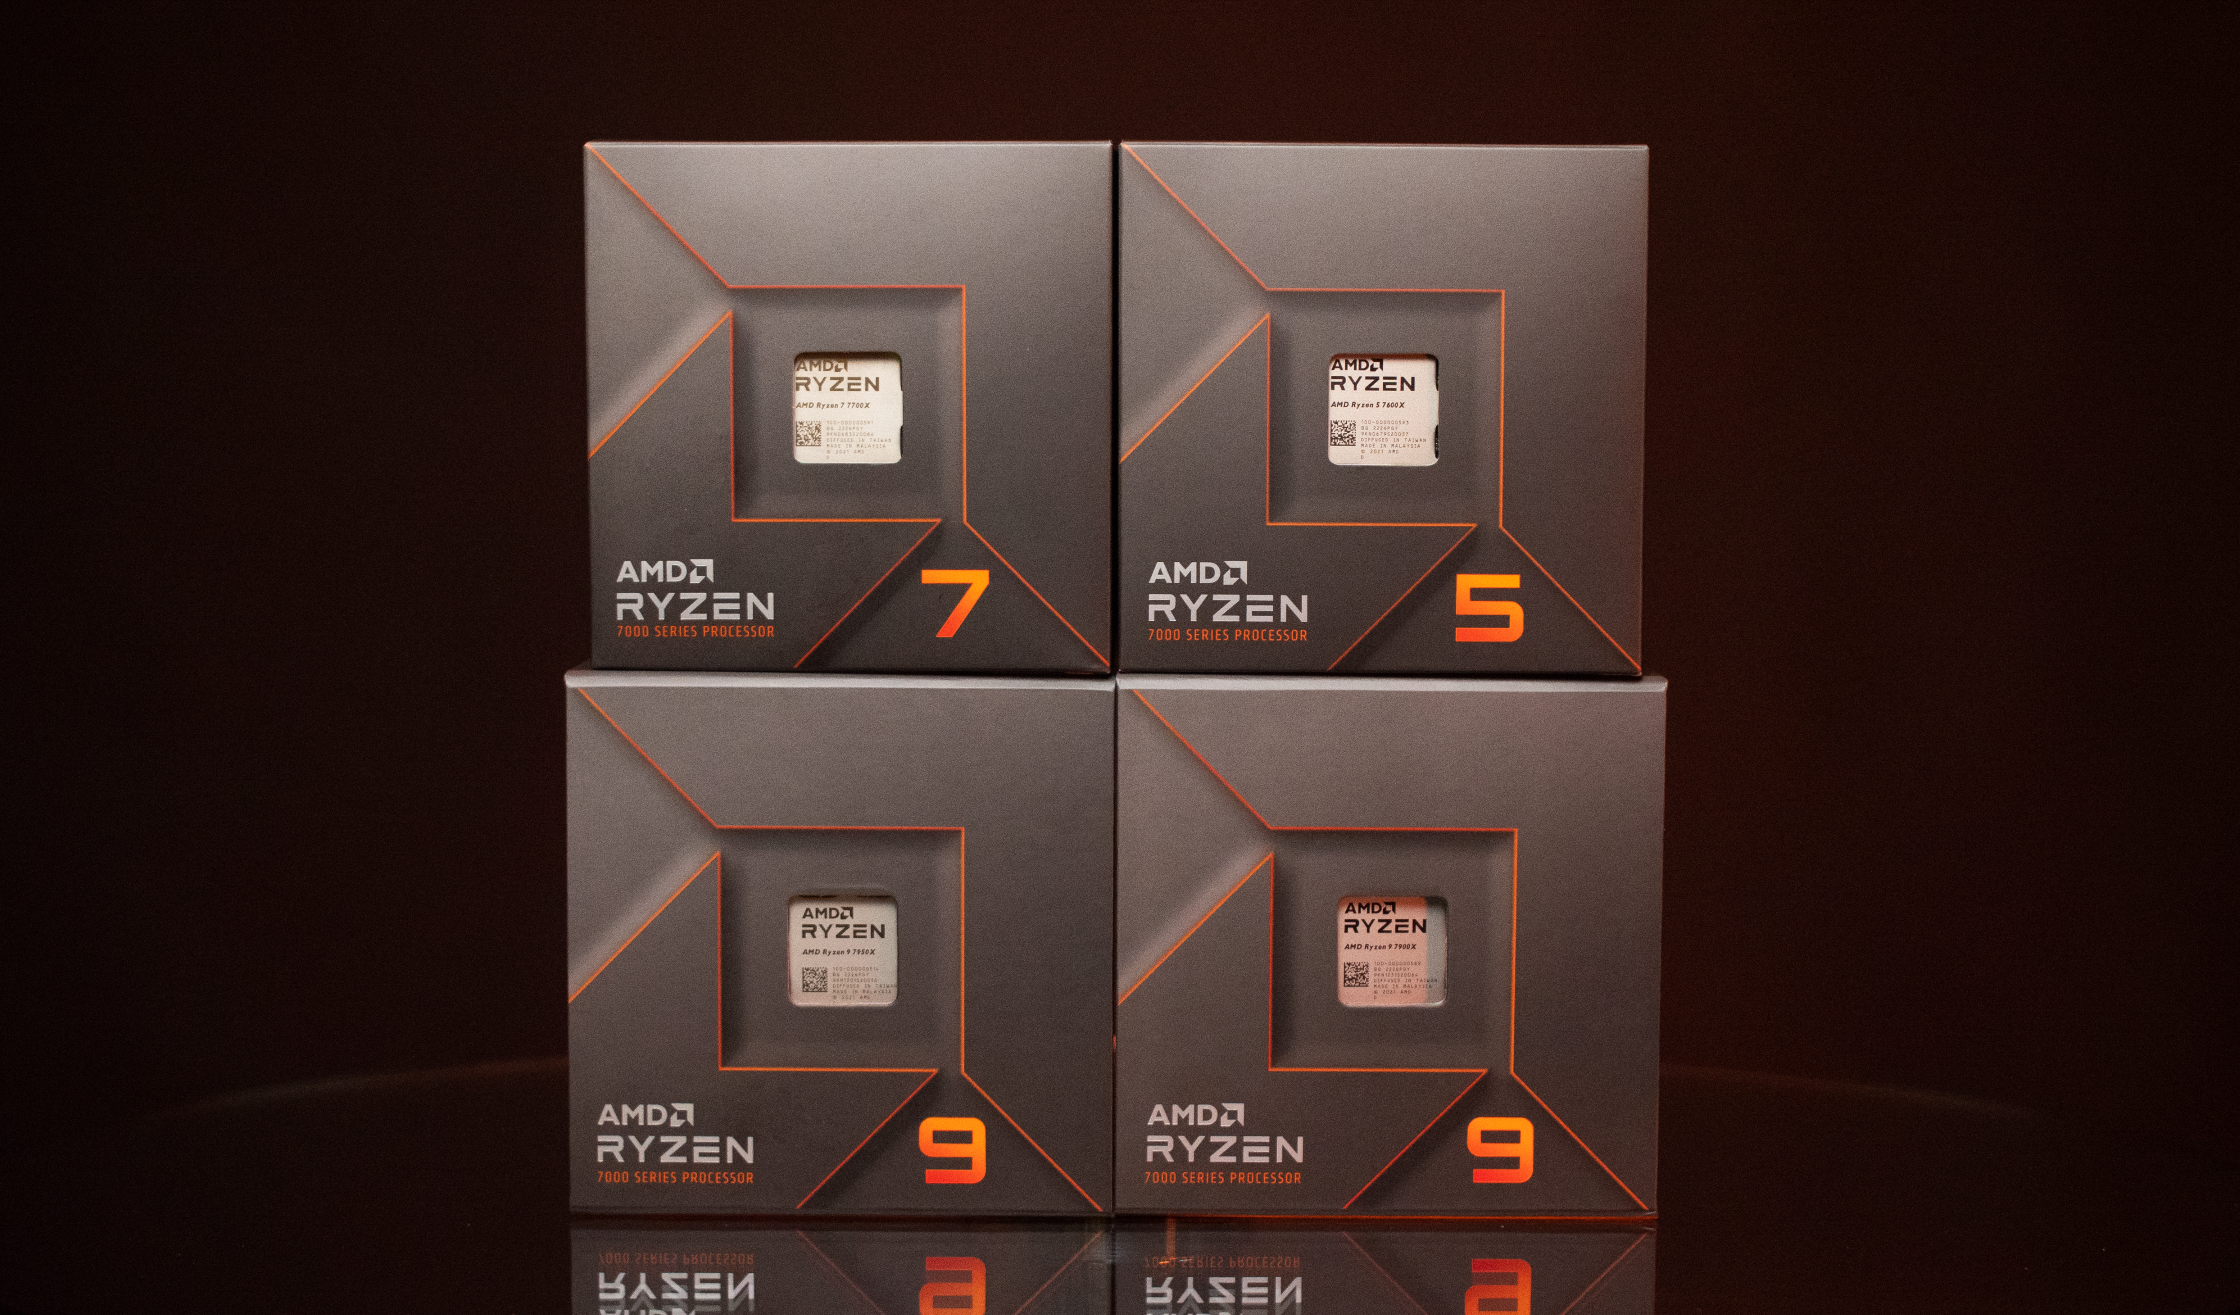 Die Preise und Spezifikationen der Desktop-Prozessoren AMD Ryzen 5 7600, Ryzen 7 7700 und Ryzen 9 7900 wurden bekannt gegeben